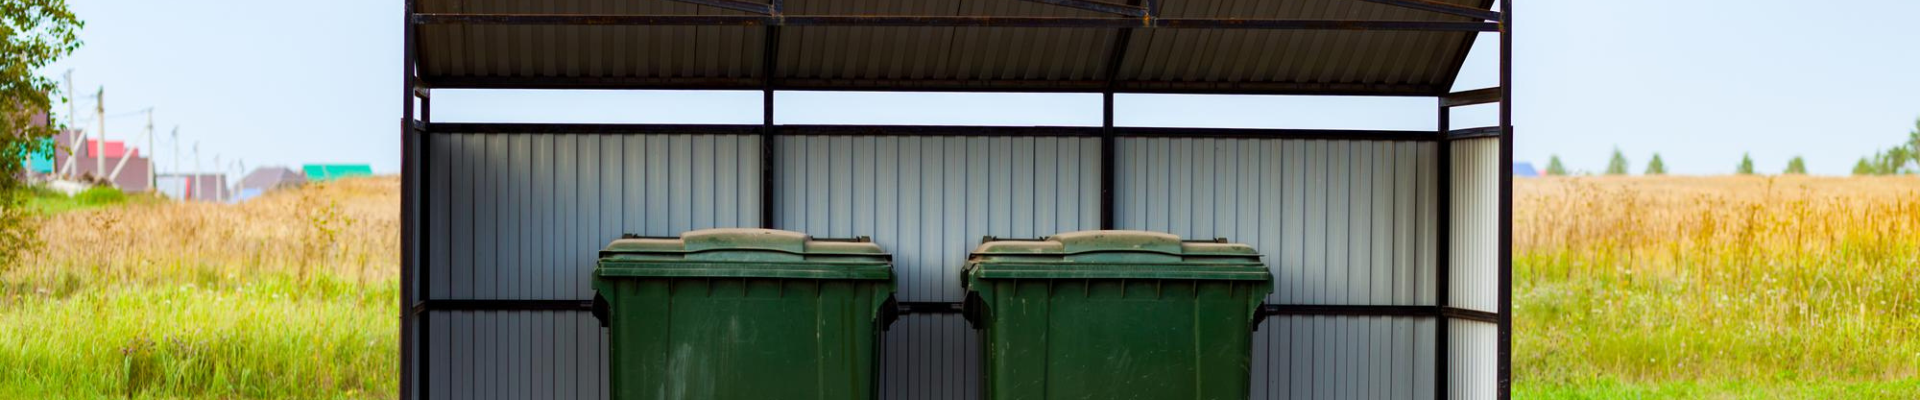 Přístřešky na skladování odpadkových košů